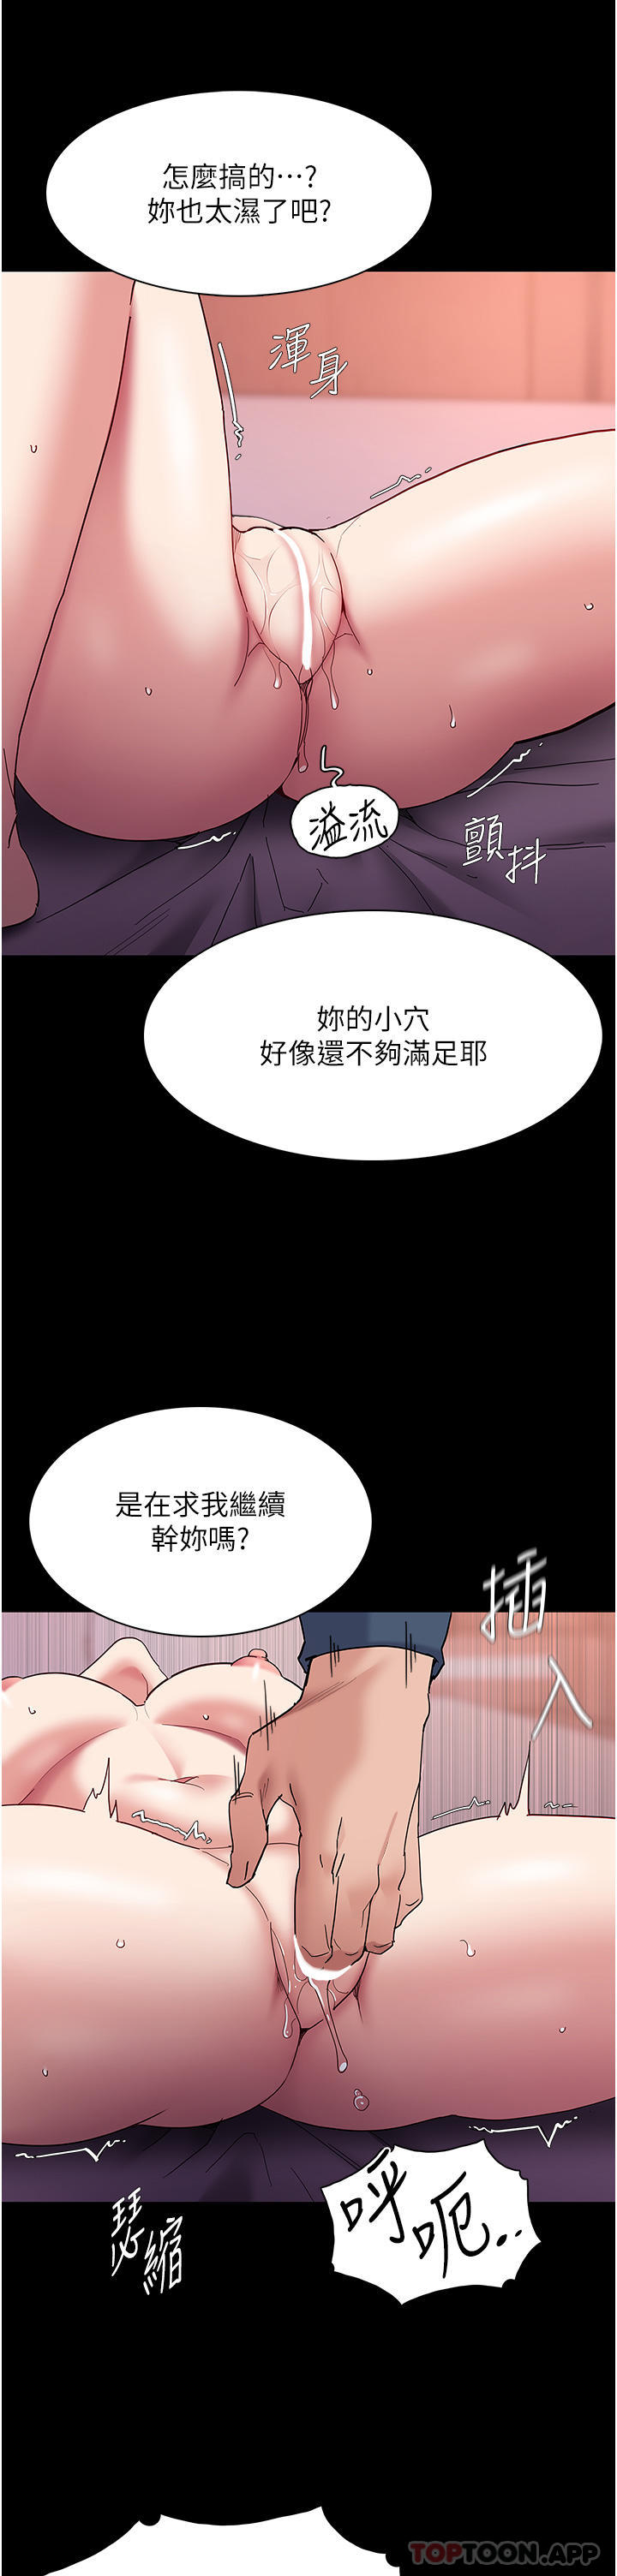 韩国污漫画 癡漢成癮 第33话-排队上公车咯 5